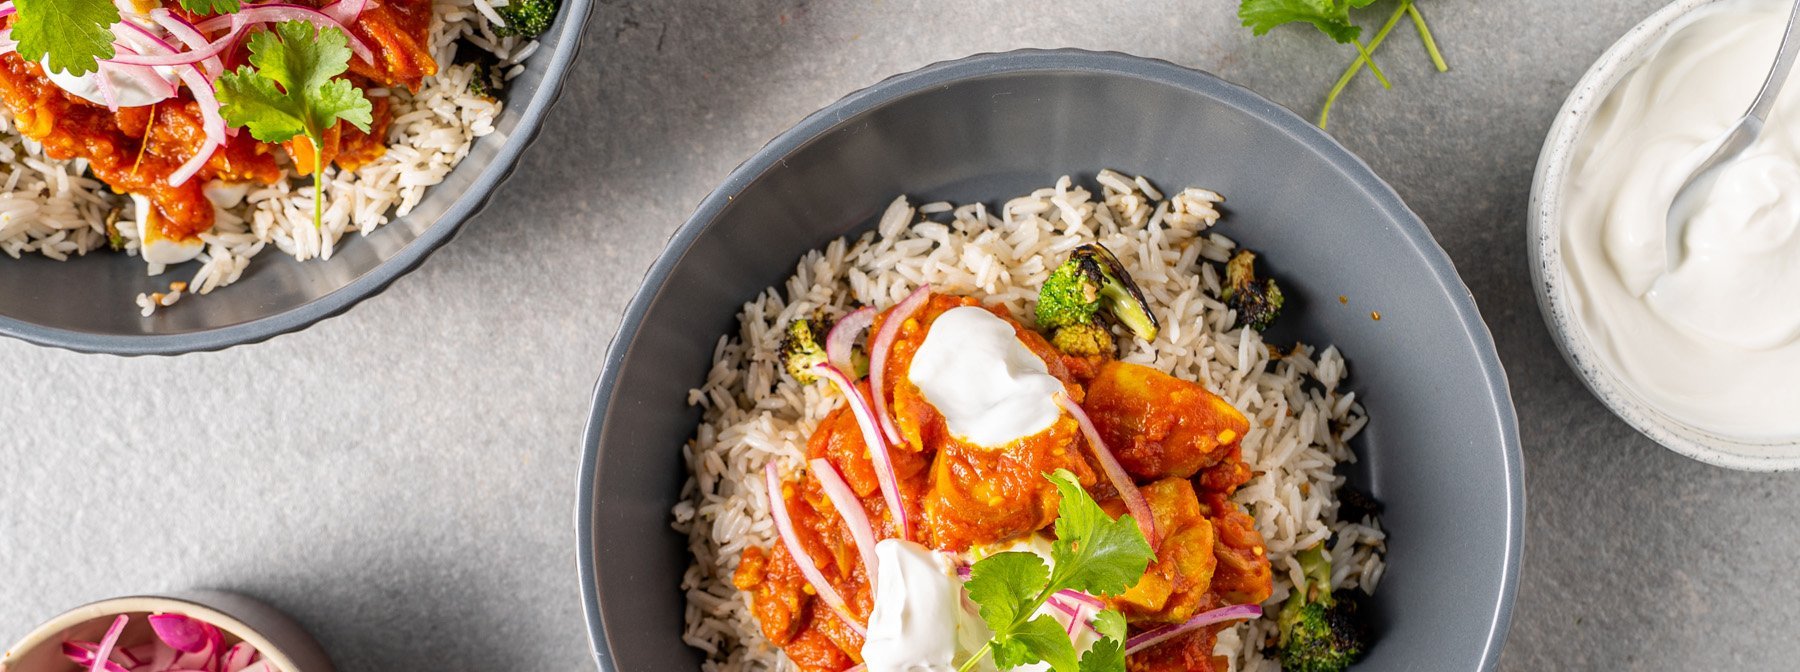 Pollo al curry con arroz y brócoli